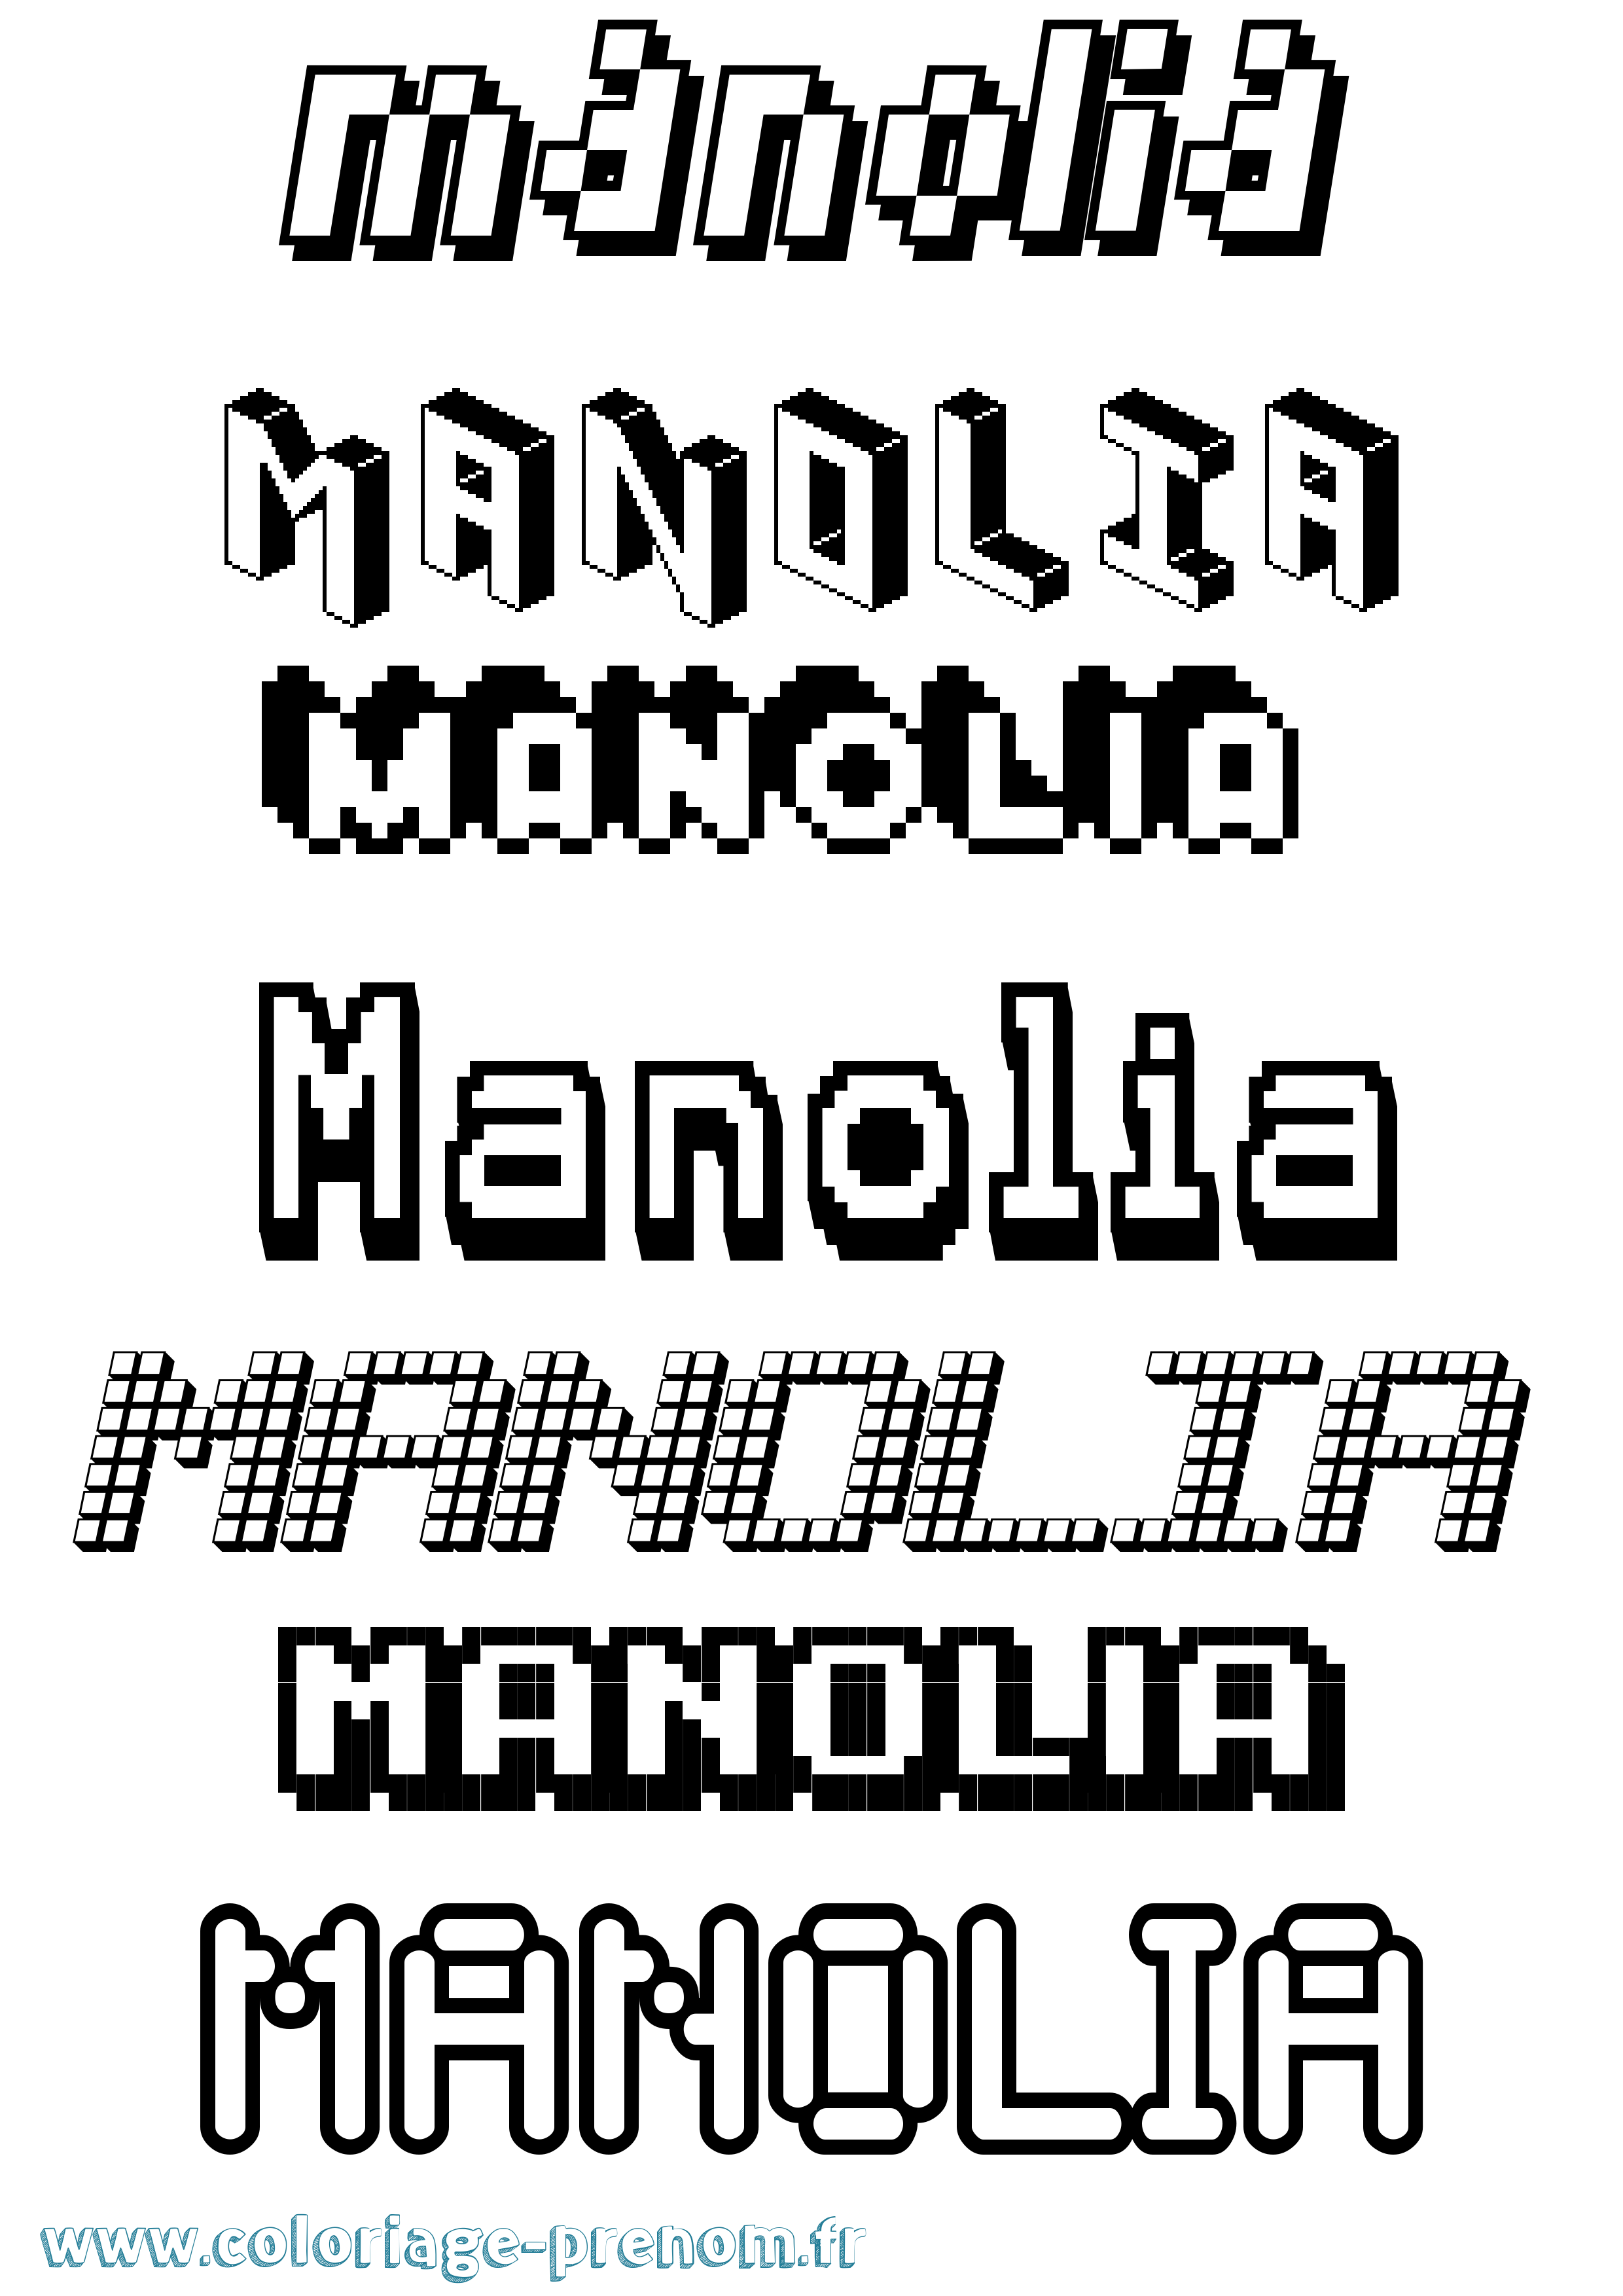 Coloriage prénom Manolia Pixel